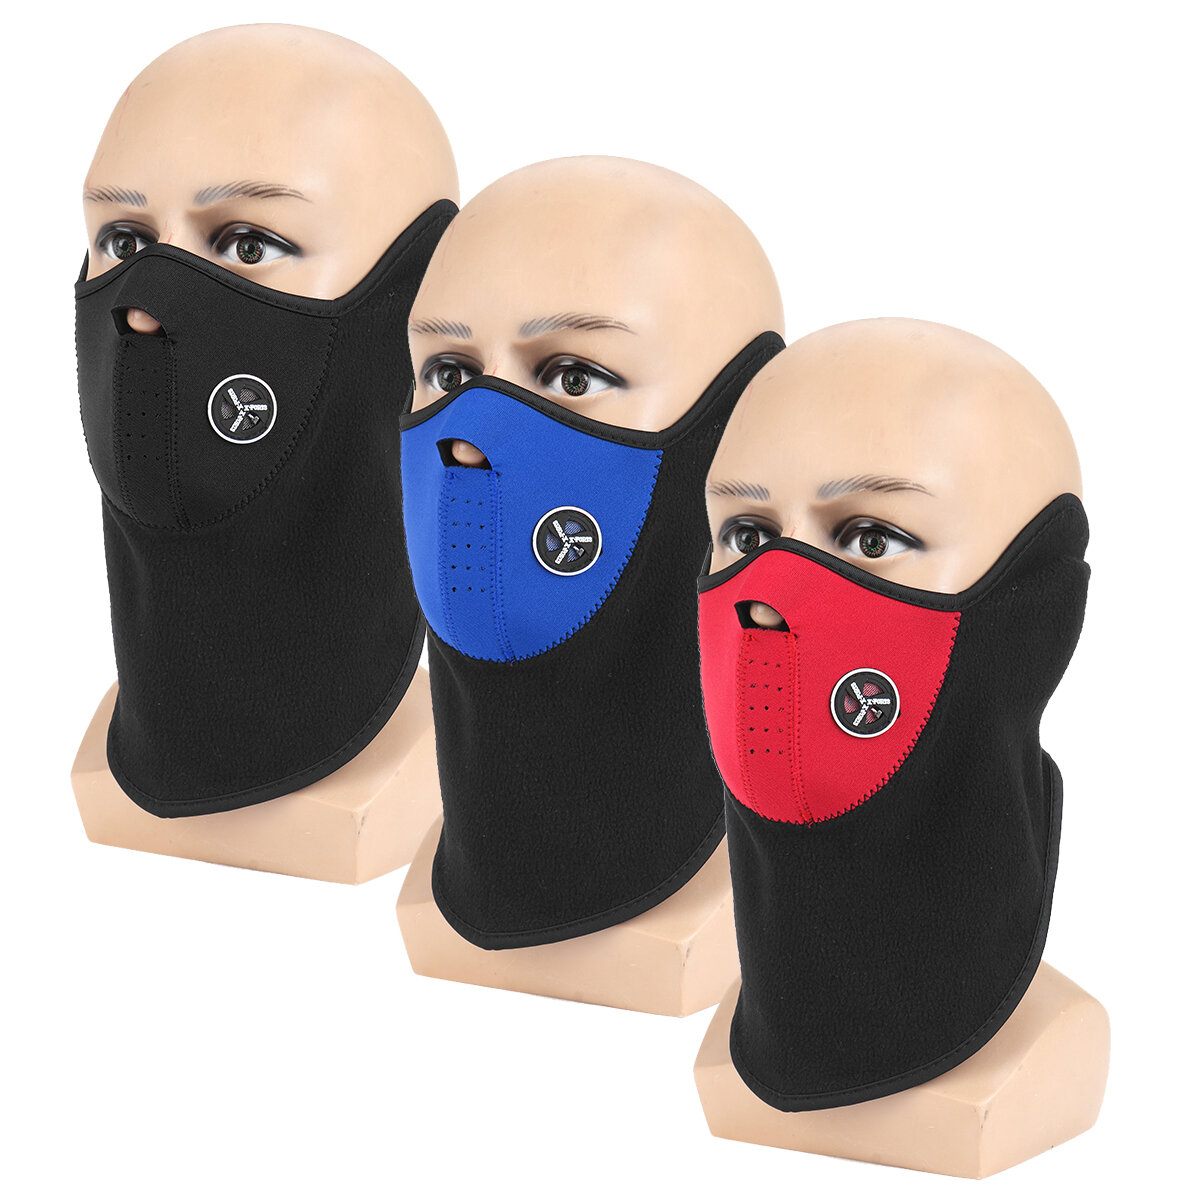 Máscara de meio rosto à prova de vento em 3 cores, com pescoço grosso para proteção contra o frio, ideal para esqui, ciclismo e outros esportes de inverno ao ar livre.